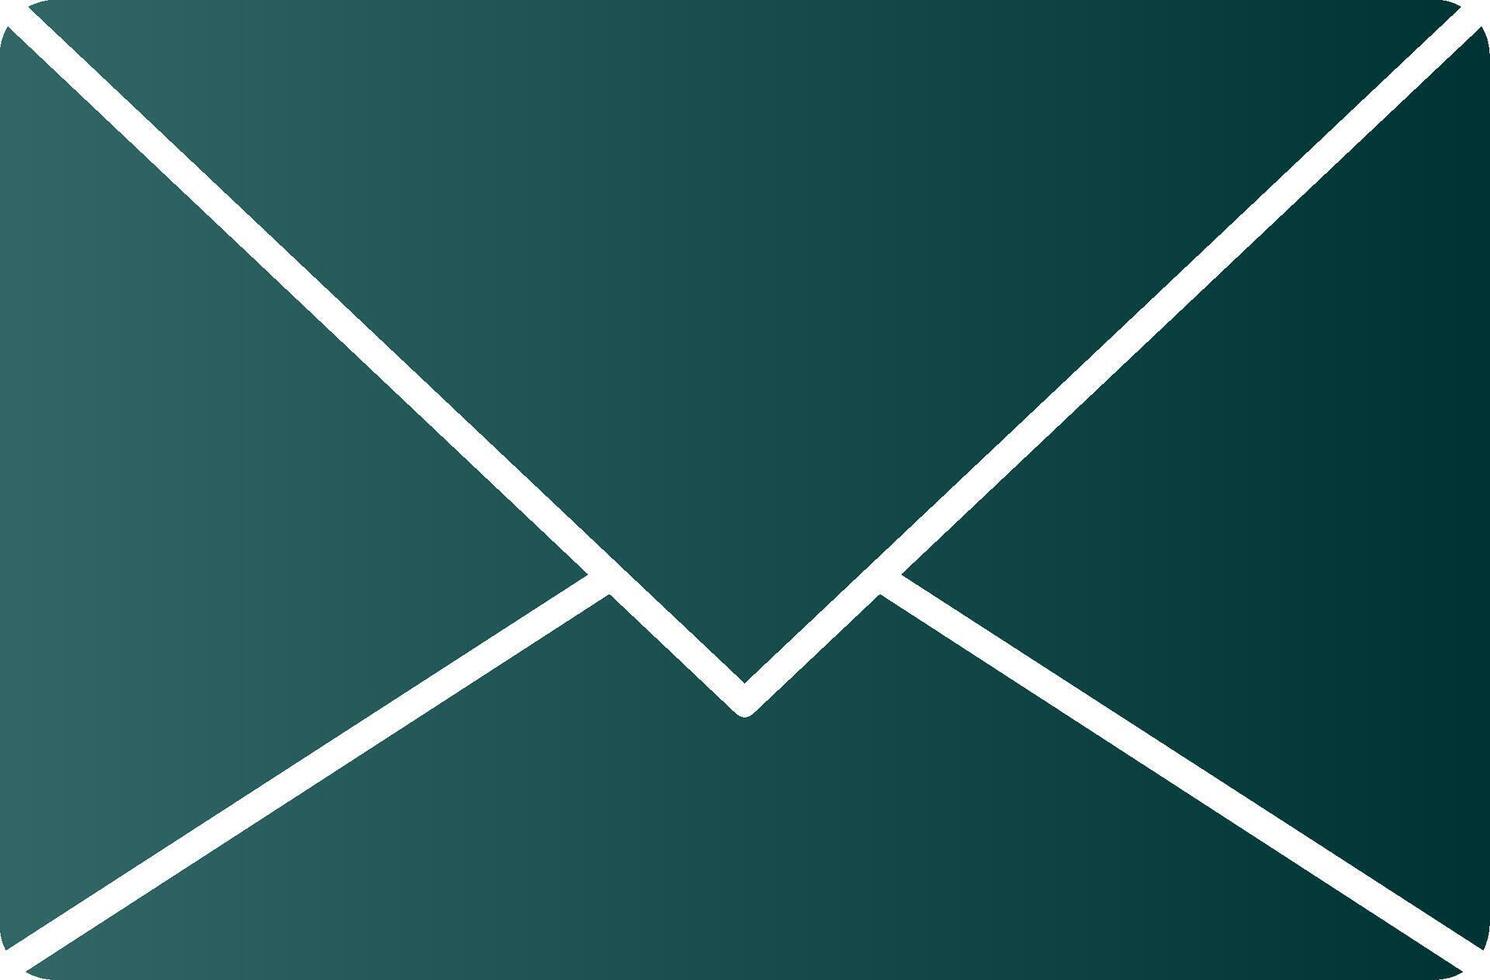 icône de dégradé de glyphe de courrier électronique vecteur